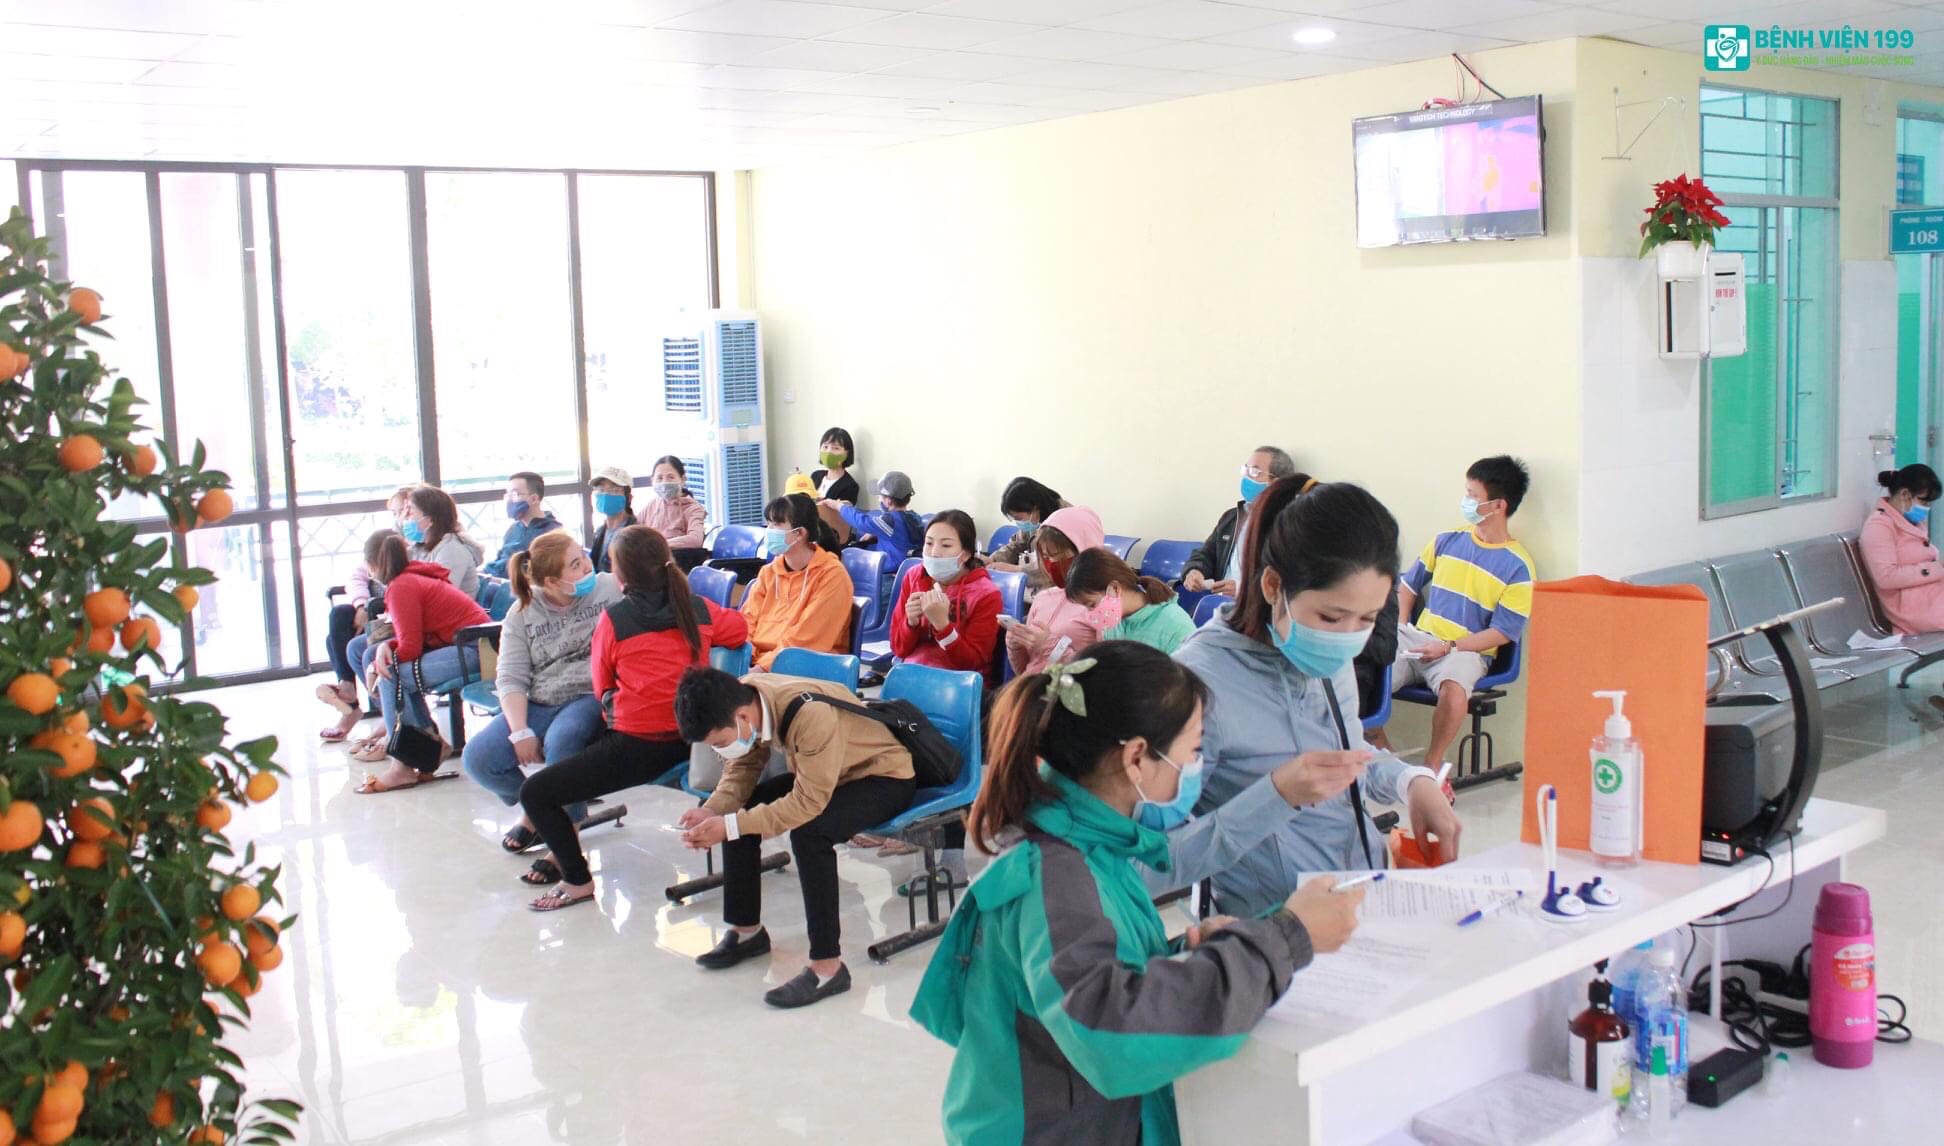  Vì sao nên đi khám sức khoẻ định kỳ tại Bệnh viện 199 Đà Nẵng?